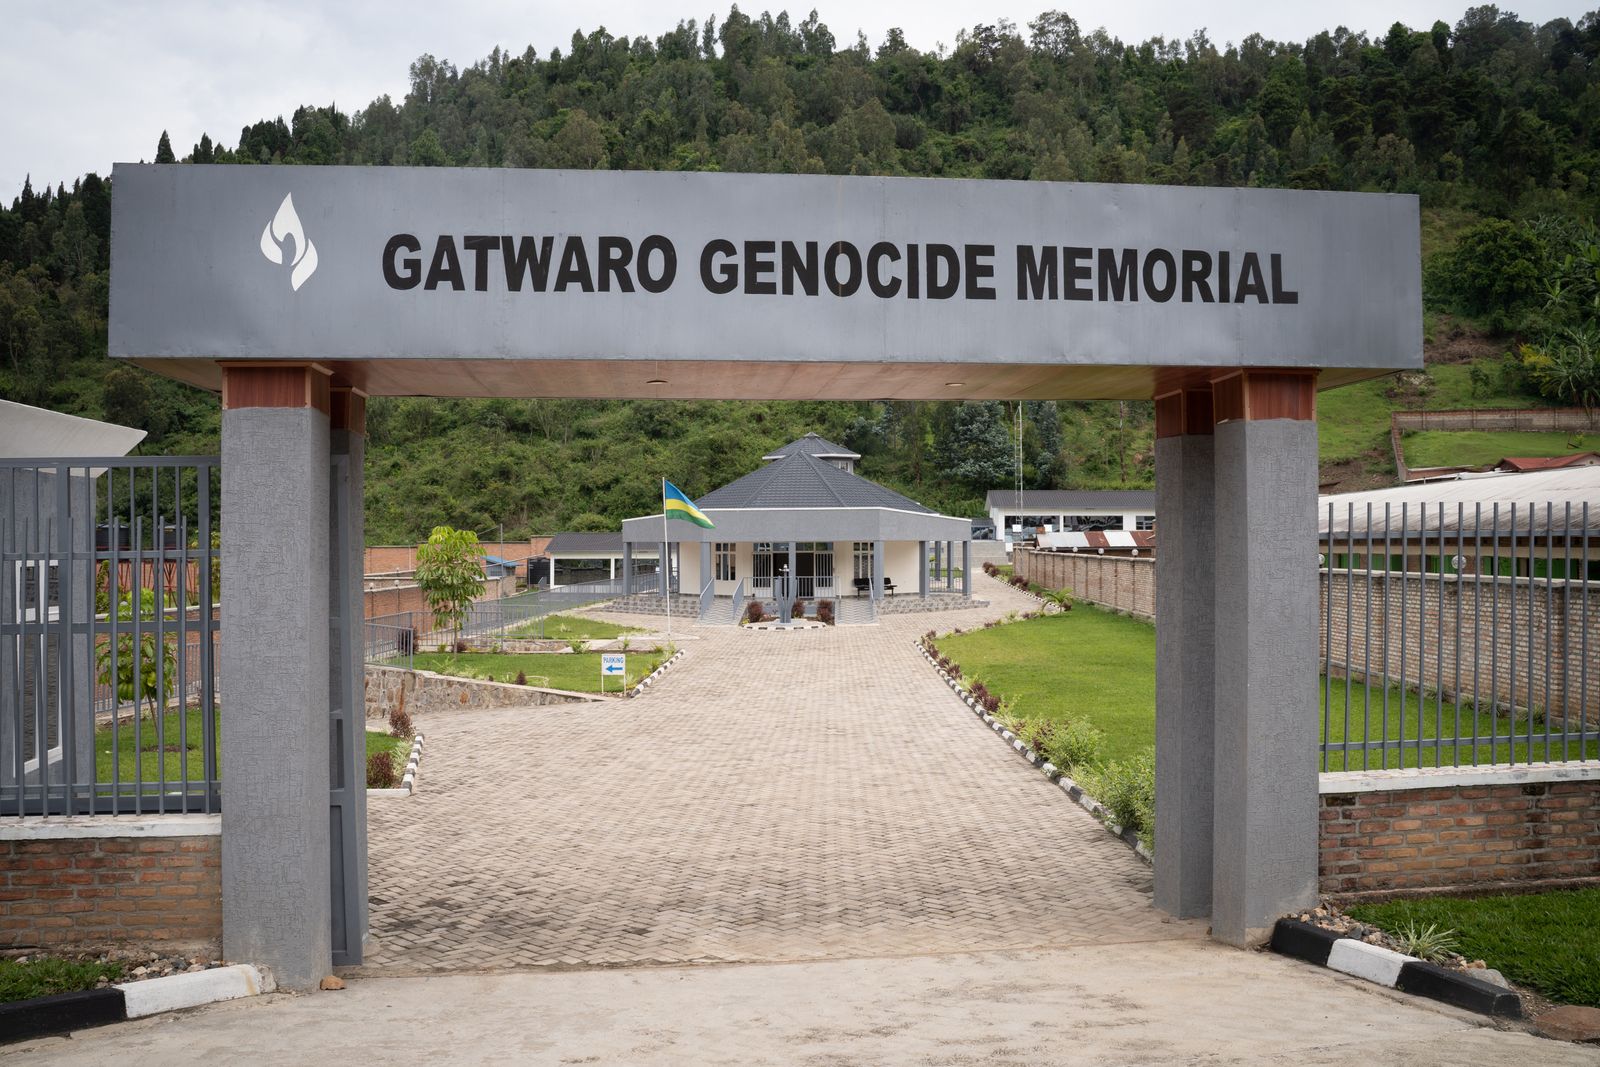 منظر عام لنصب جاتوارو التذكاري للإبادة الجماعية غربي رواندا، حيث جماجم وعظام وممتلكات ضحايا الإبادة عام 1994